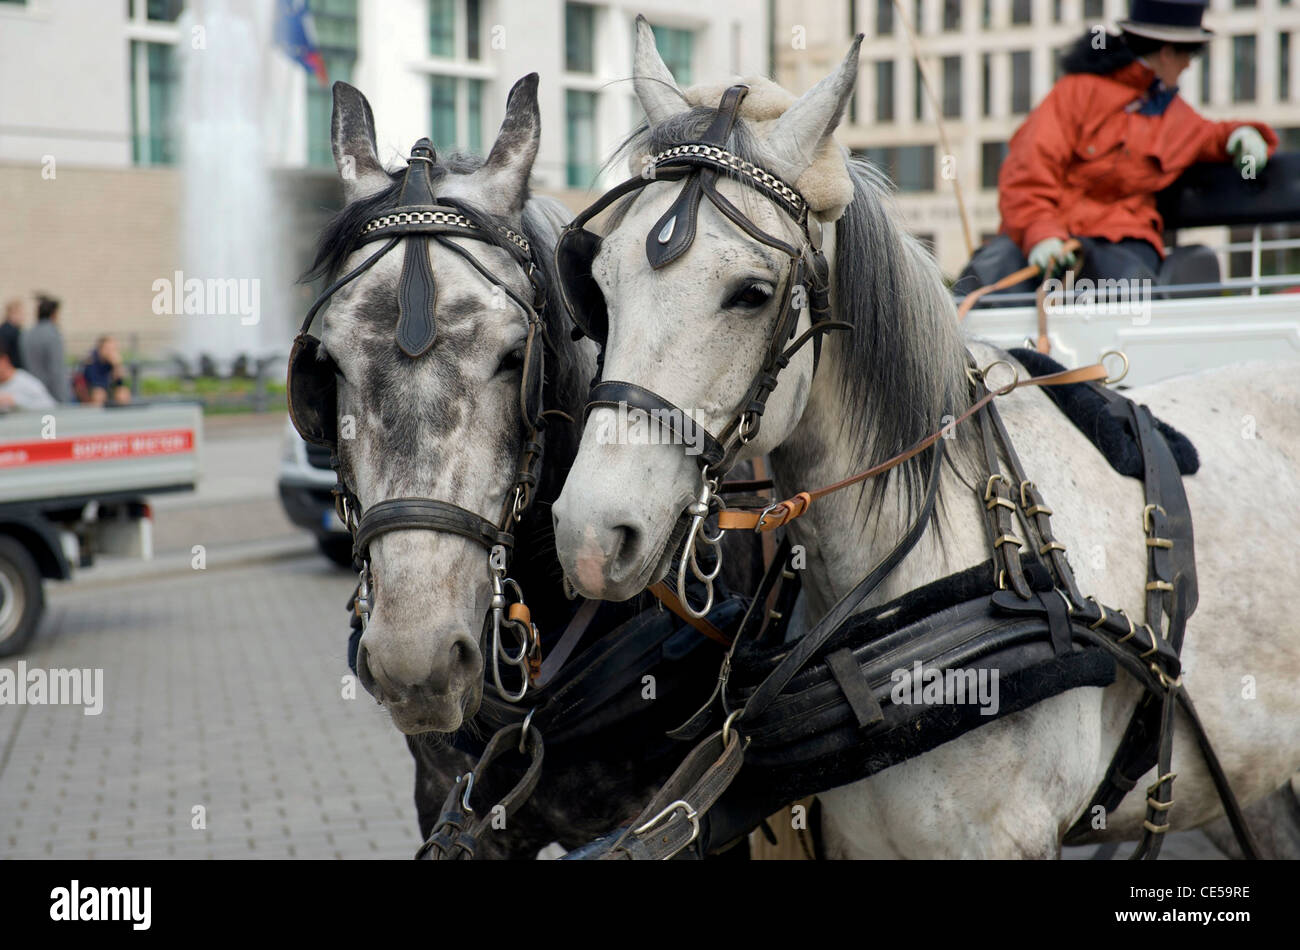 Zwei graue Pferde, die Wagen unter Touristen rund um das Brandenburger Tor in Berlin Deutschland ziehen. Picture by Pete Gawlik. Stockfoto